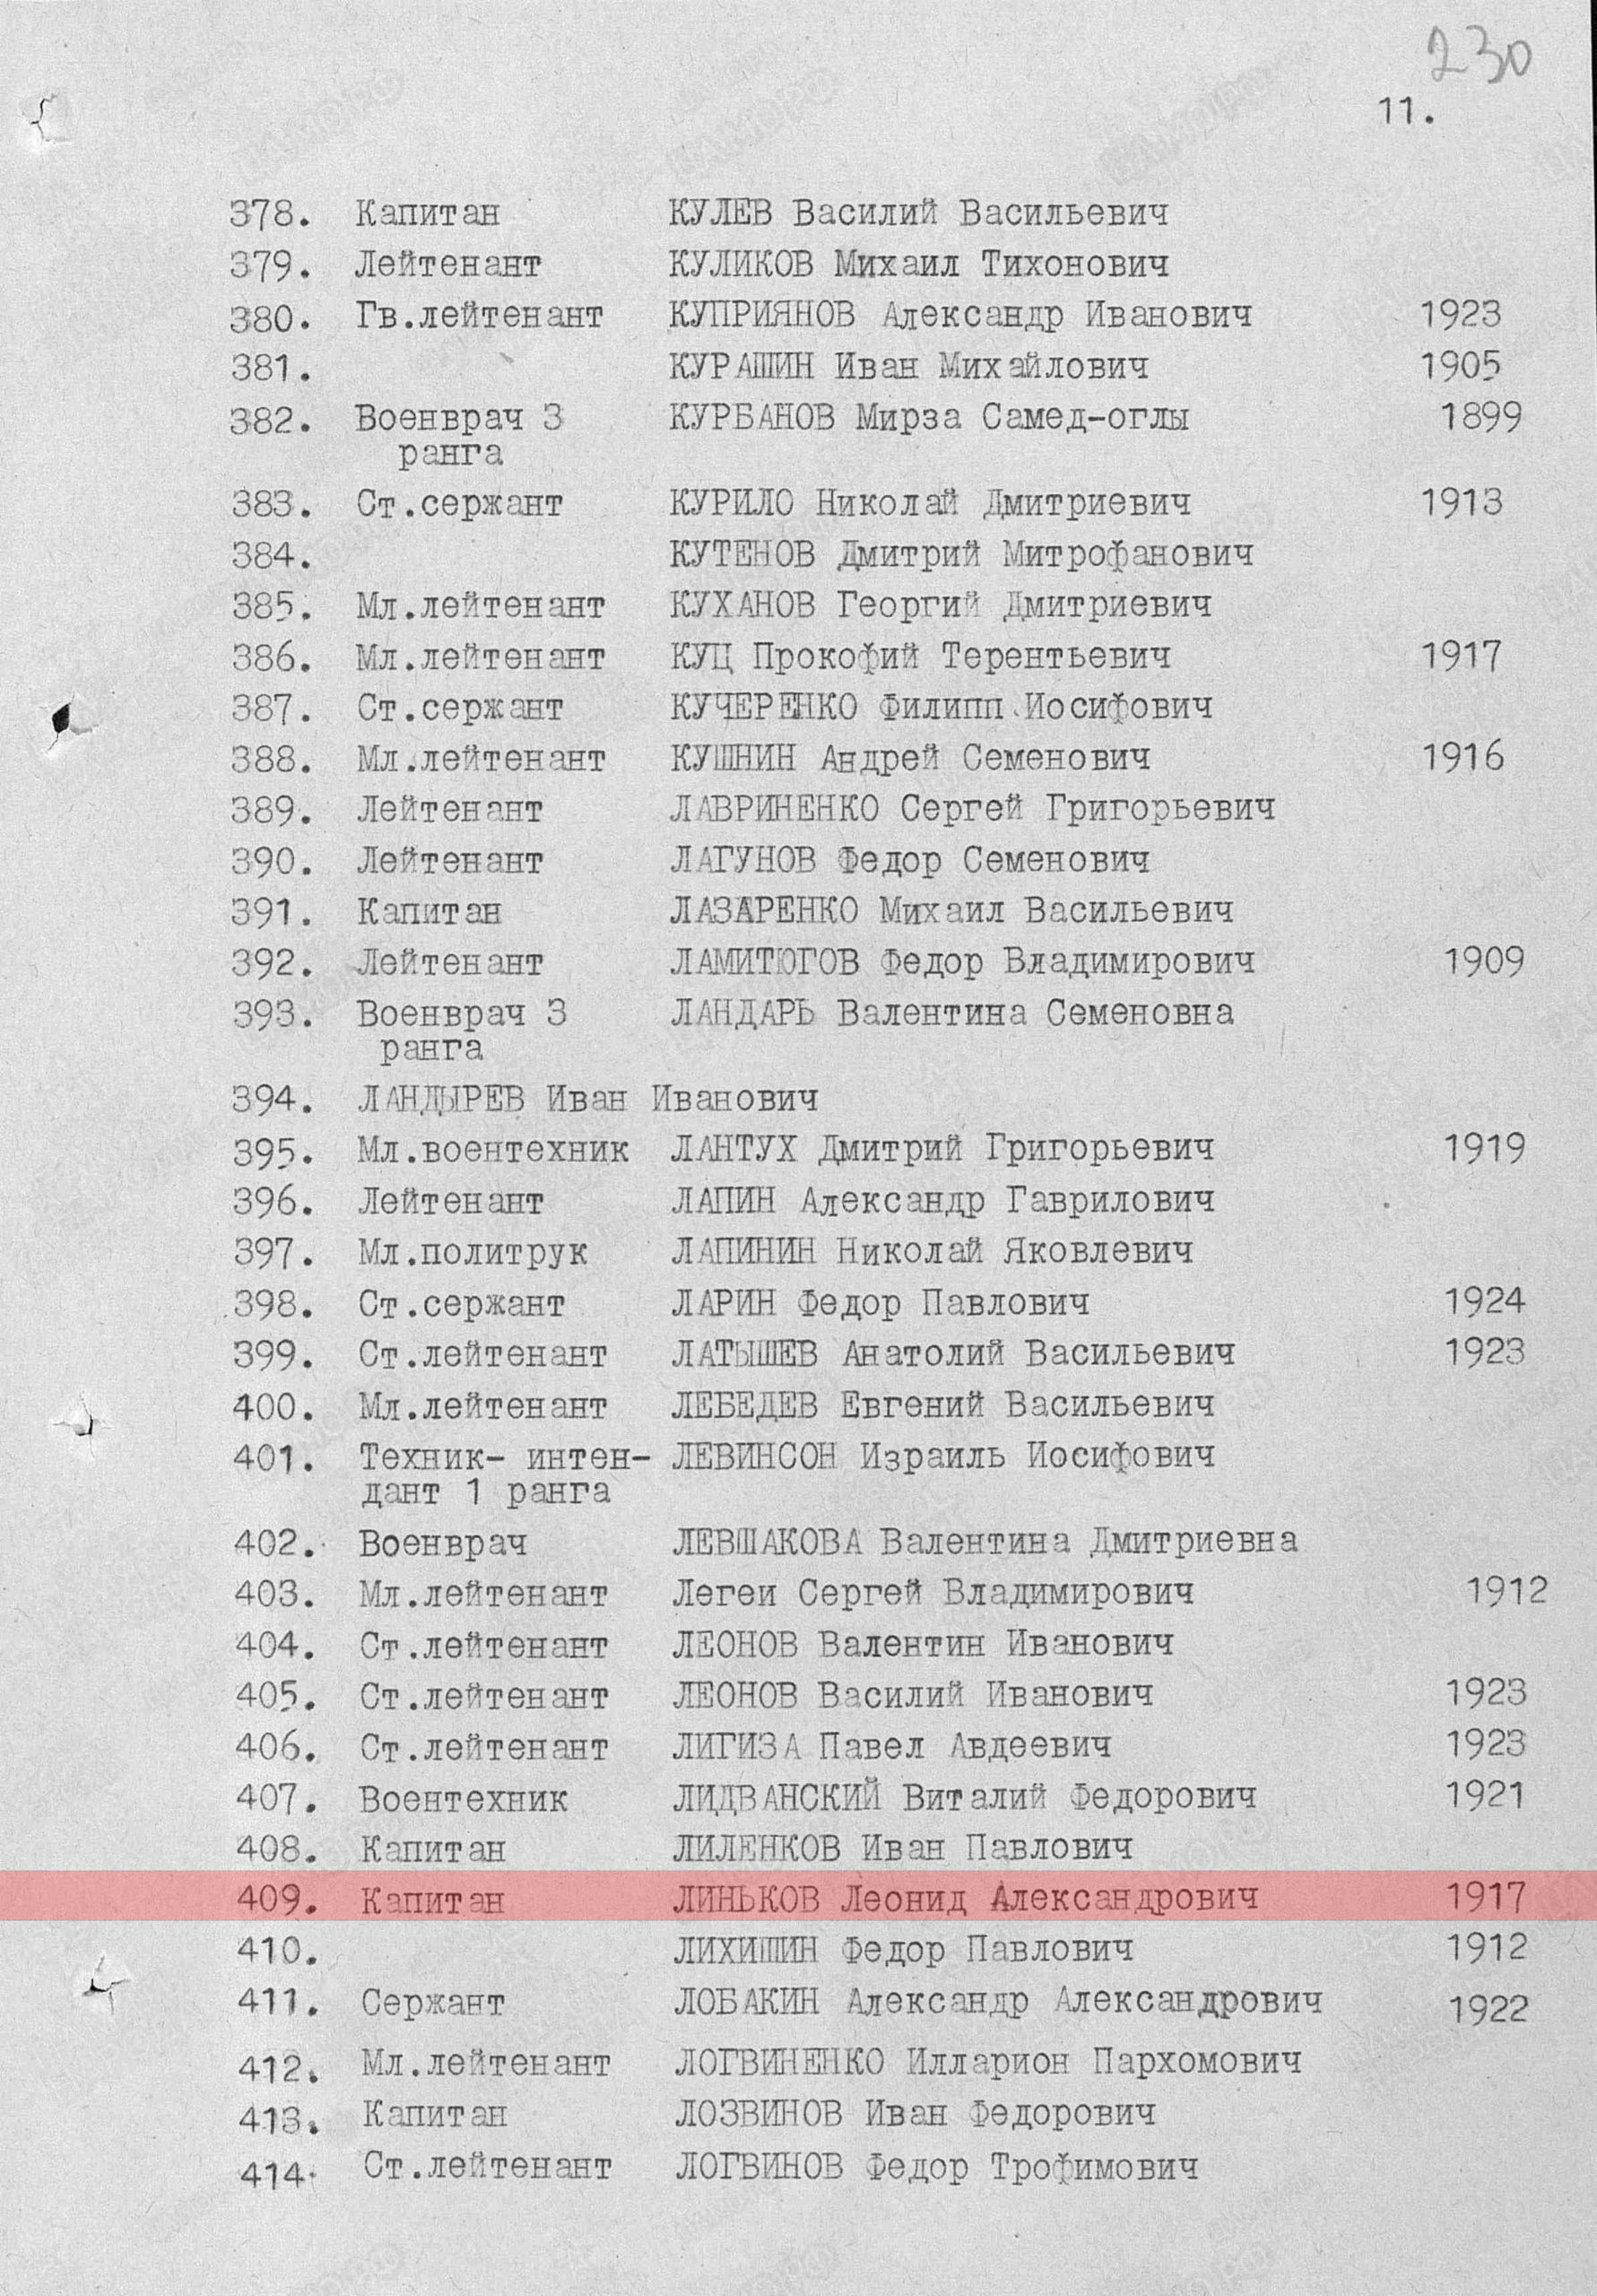 Лист из списка контрольных карт картотеки потерь, 14.06.1945